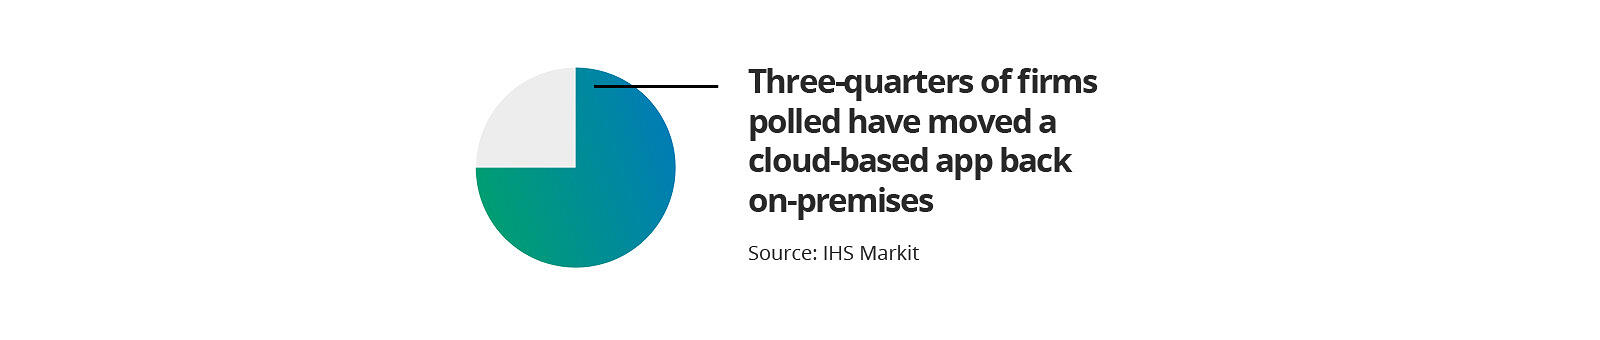 四分之三的公司已经将云应用重新搬回prem